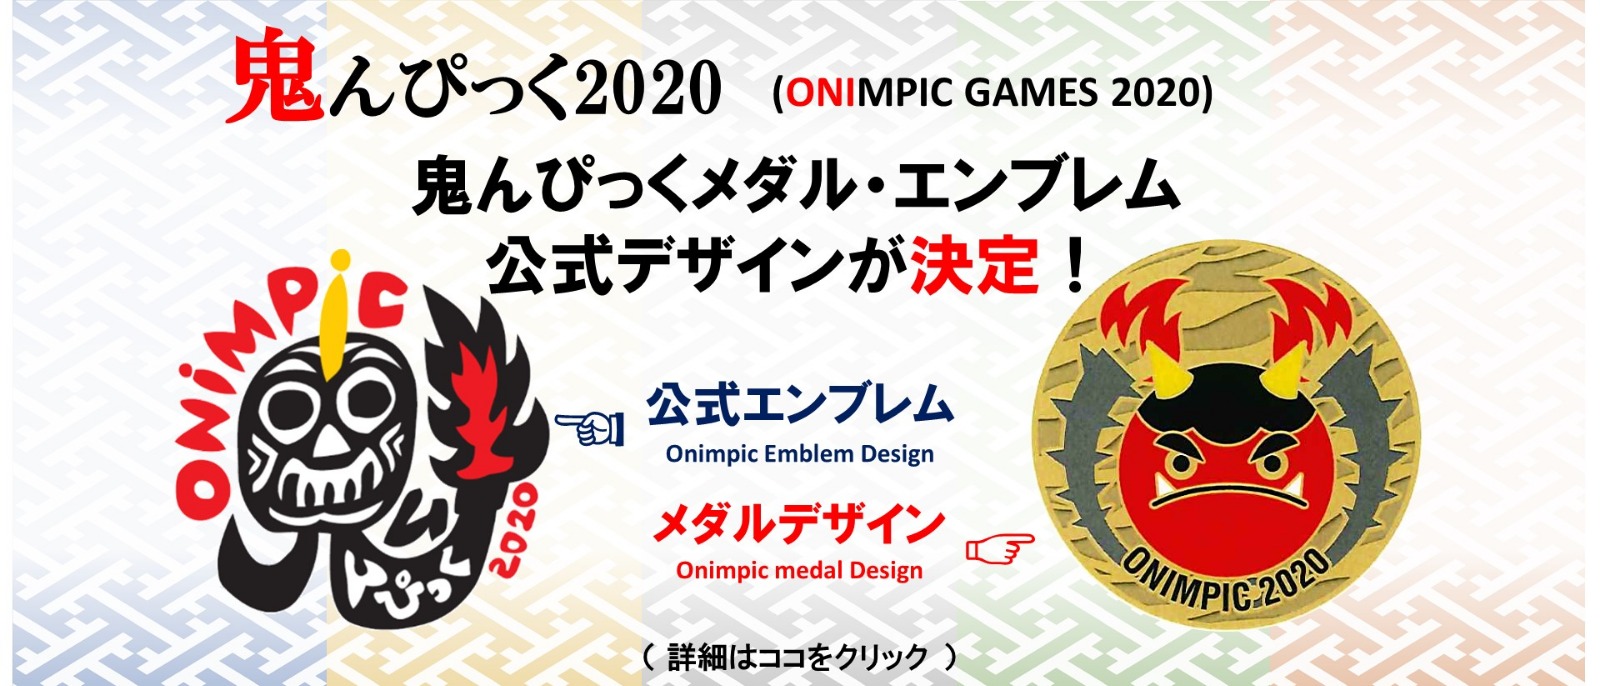 Onimpic 2020（Kunisaki Onimpic Games 2020）Design recruitment